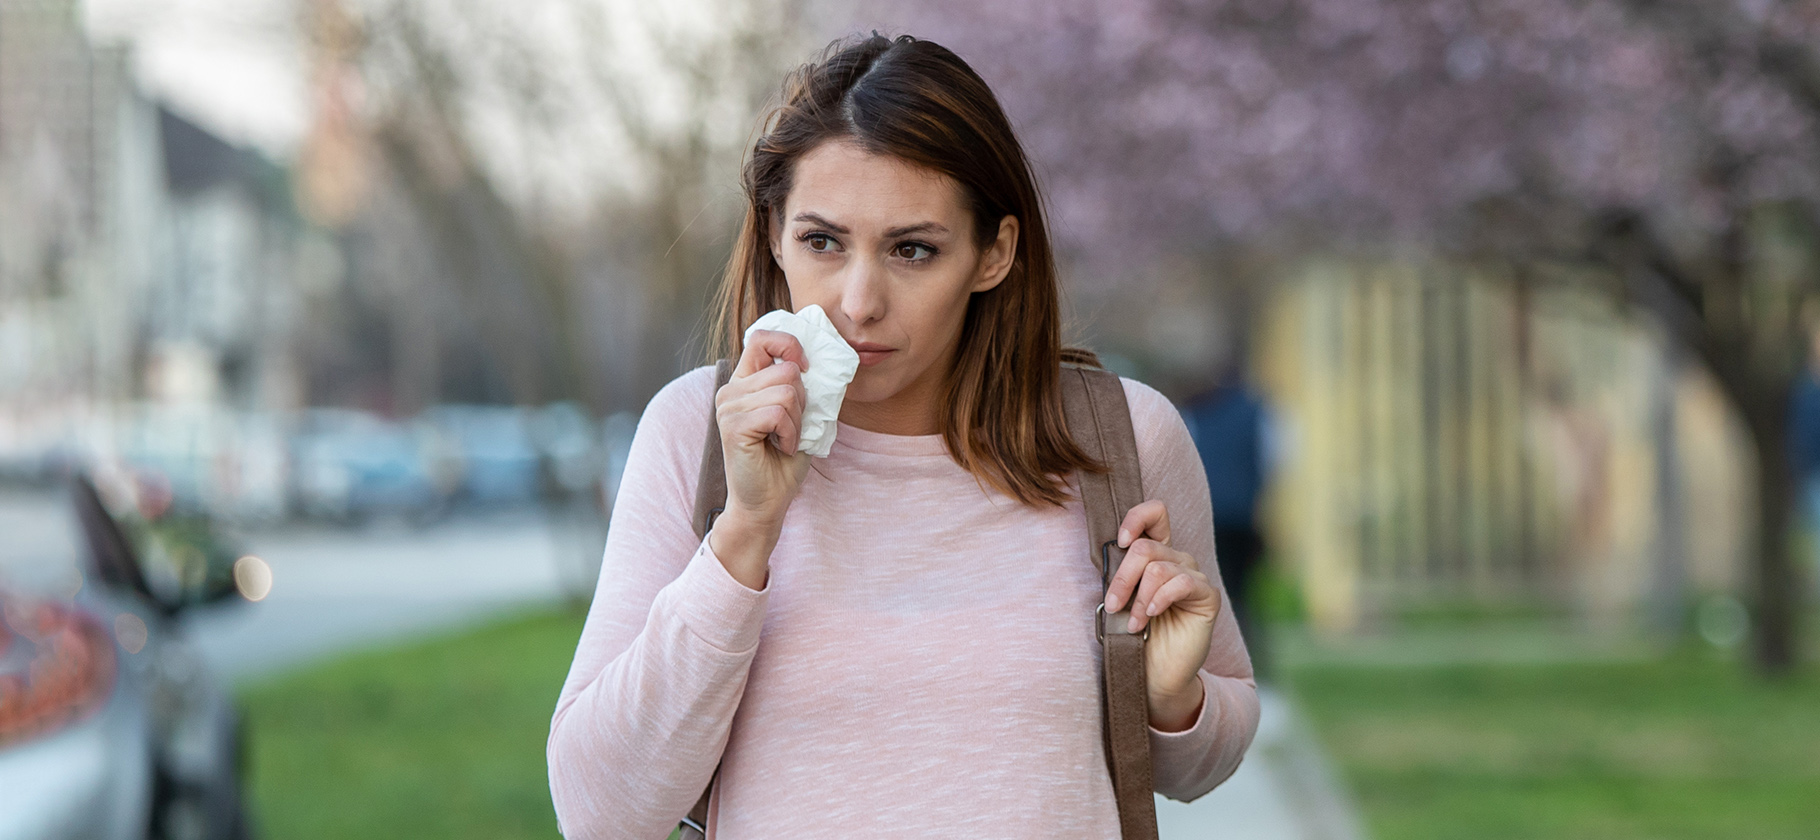 9 мифов об аллергии, которым не стоит верить